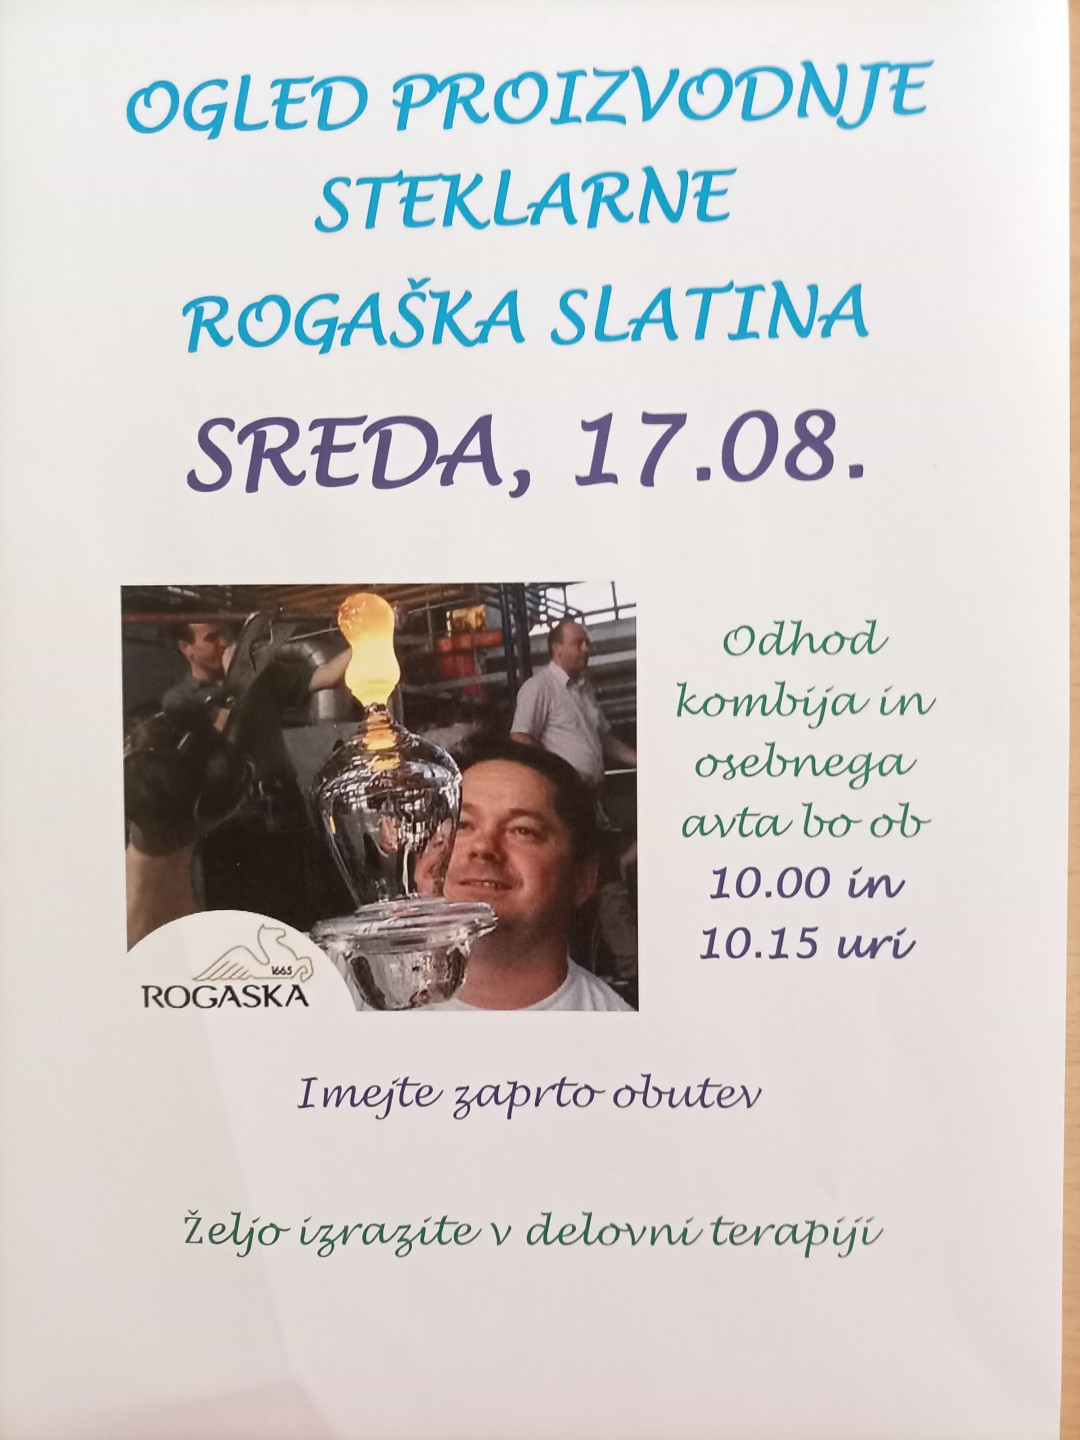 Ogled proizvodnje steklarne Rogaška Slatina, sreda, 17.08.2022